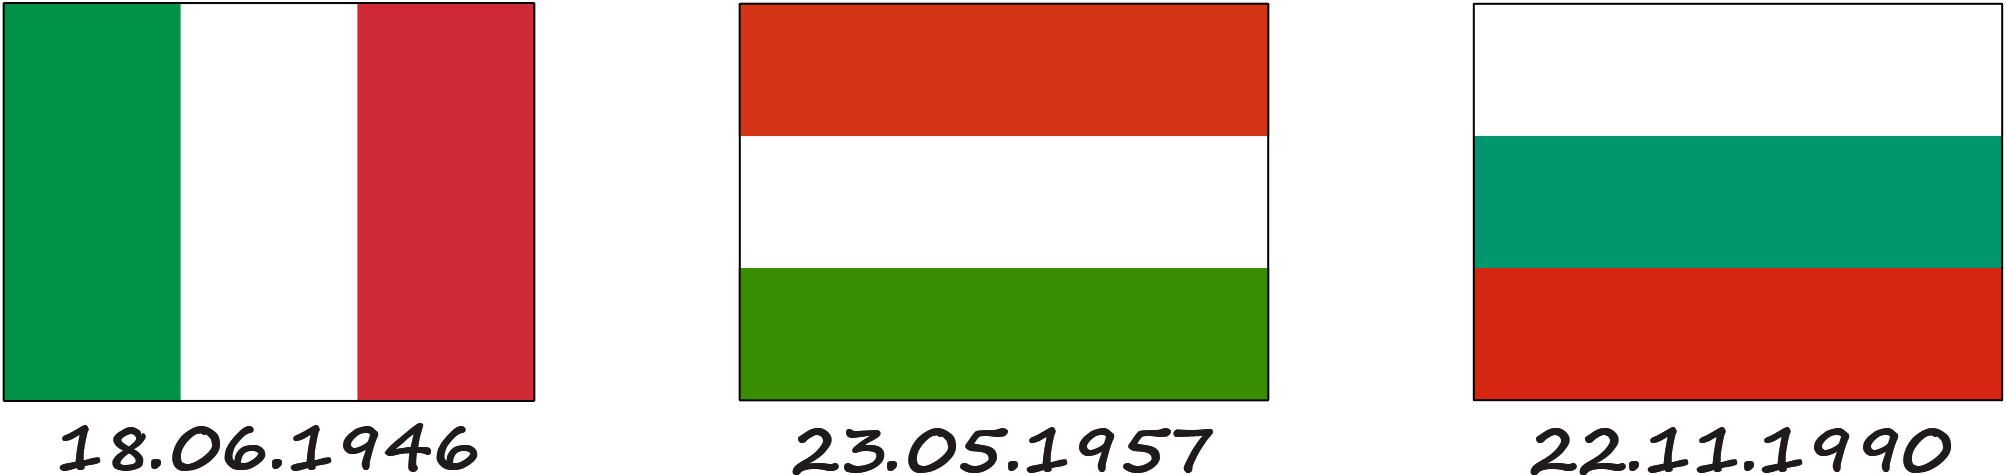 À quels drapeaux le drapeau hongrois ressemble-t-il ?